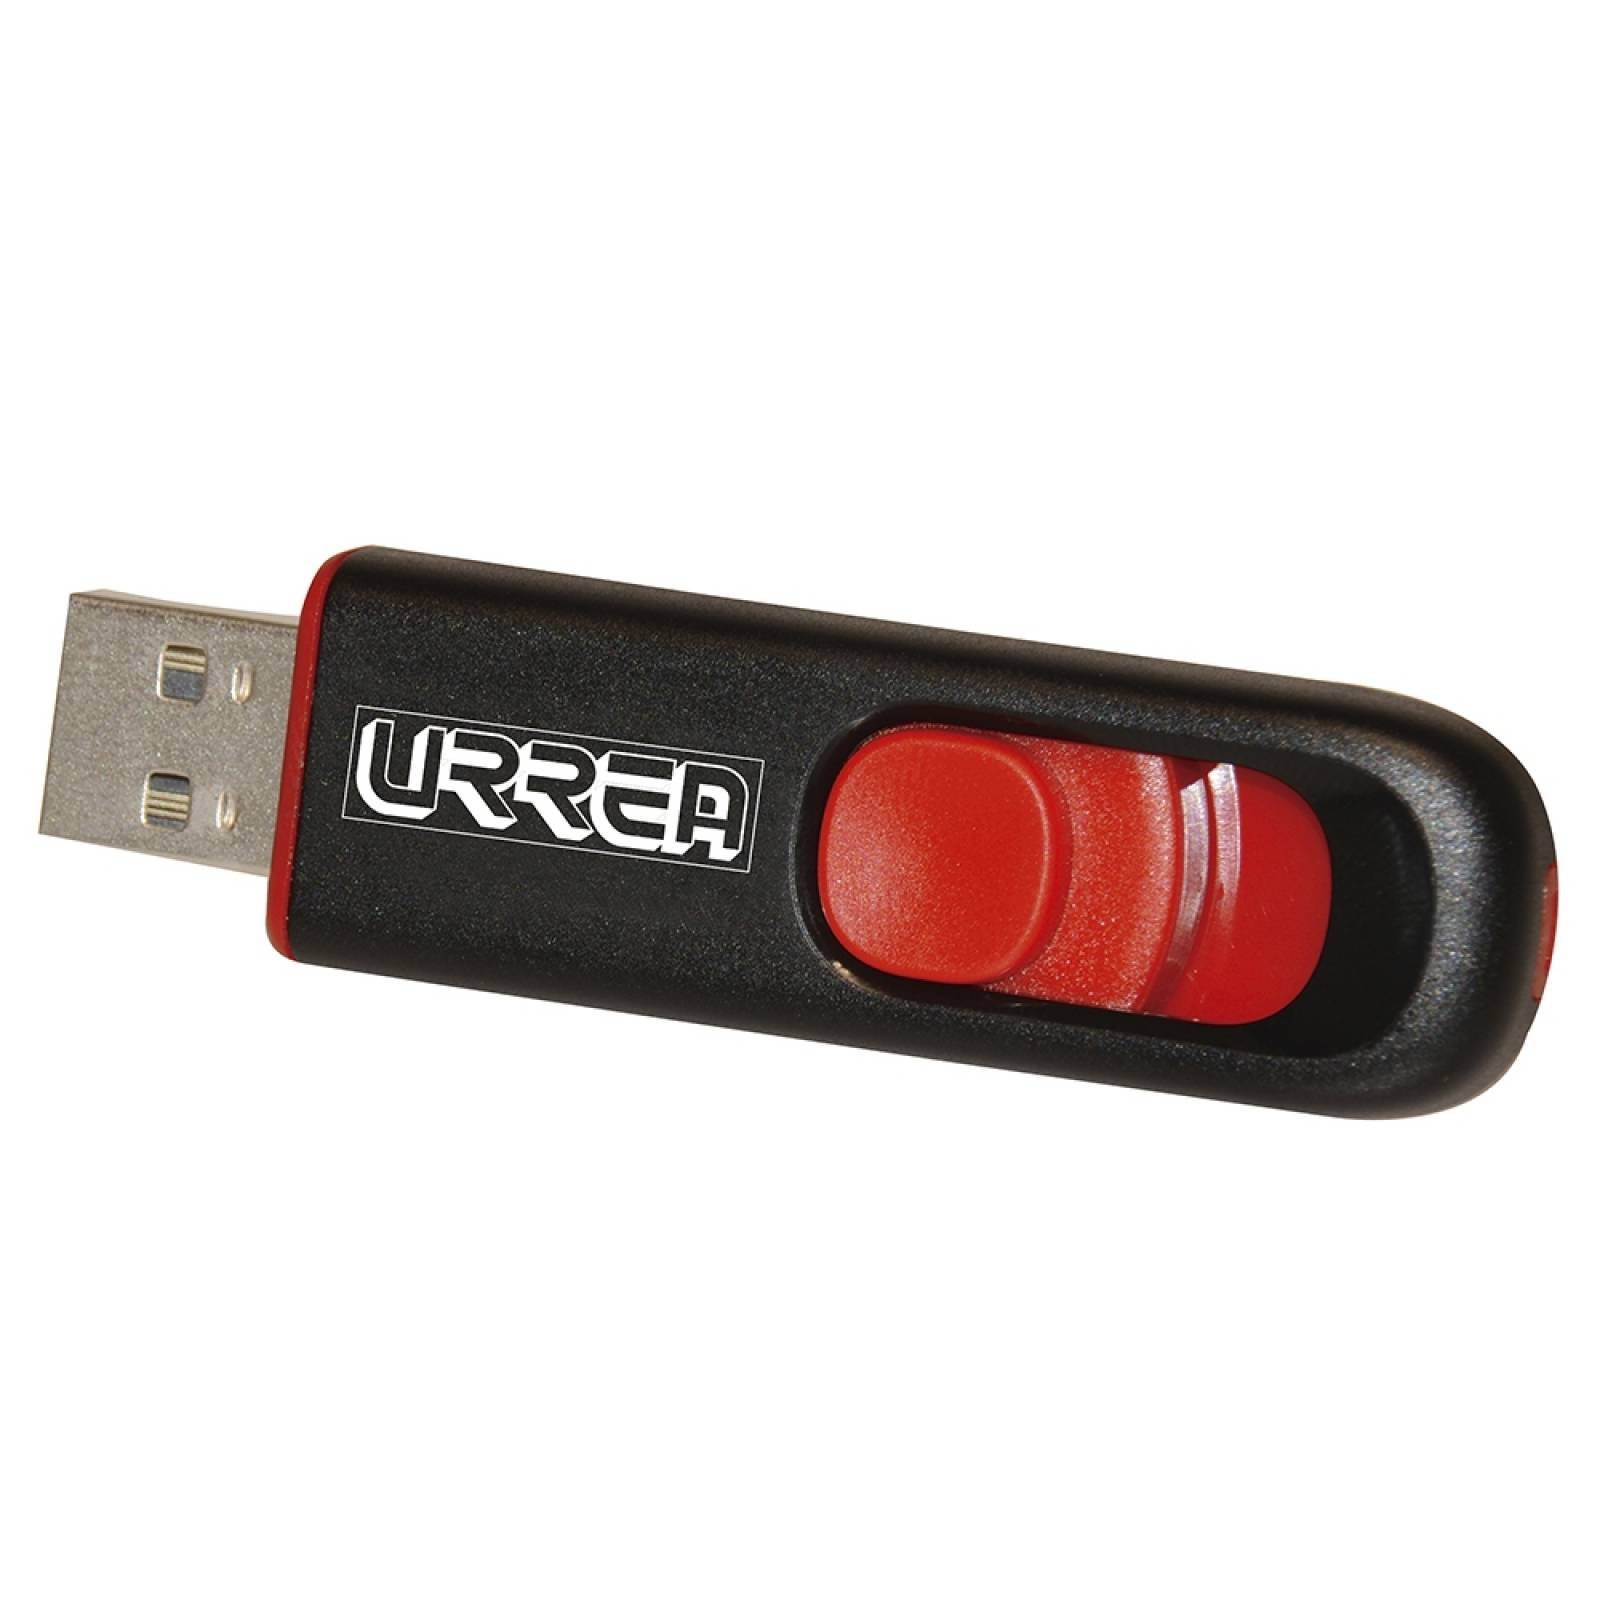 Memoria USB retráctil 8GB MUSB8U Urrea